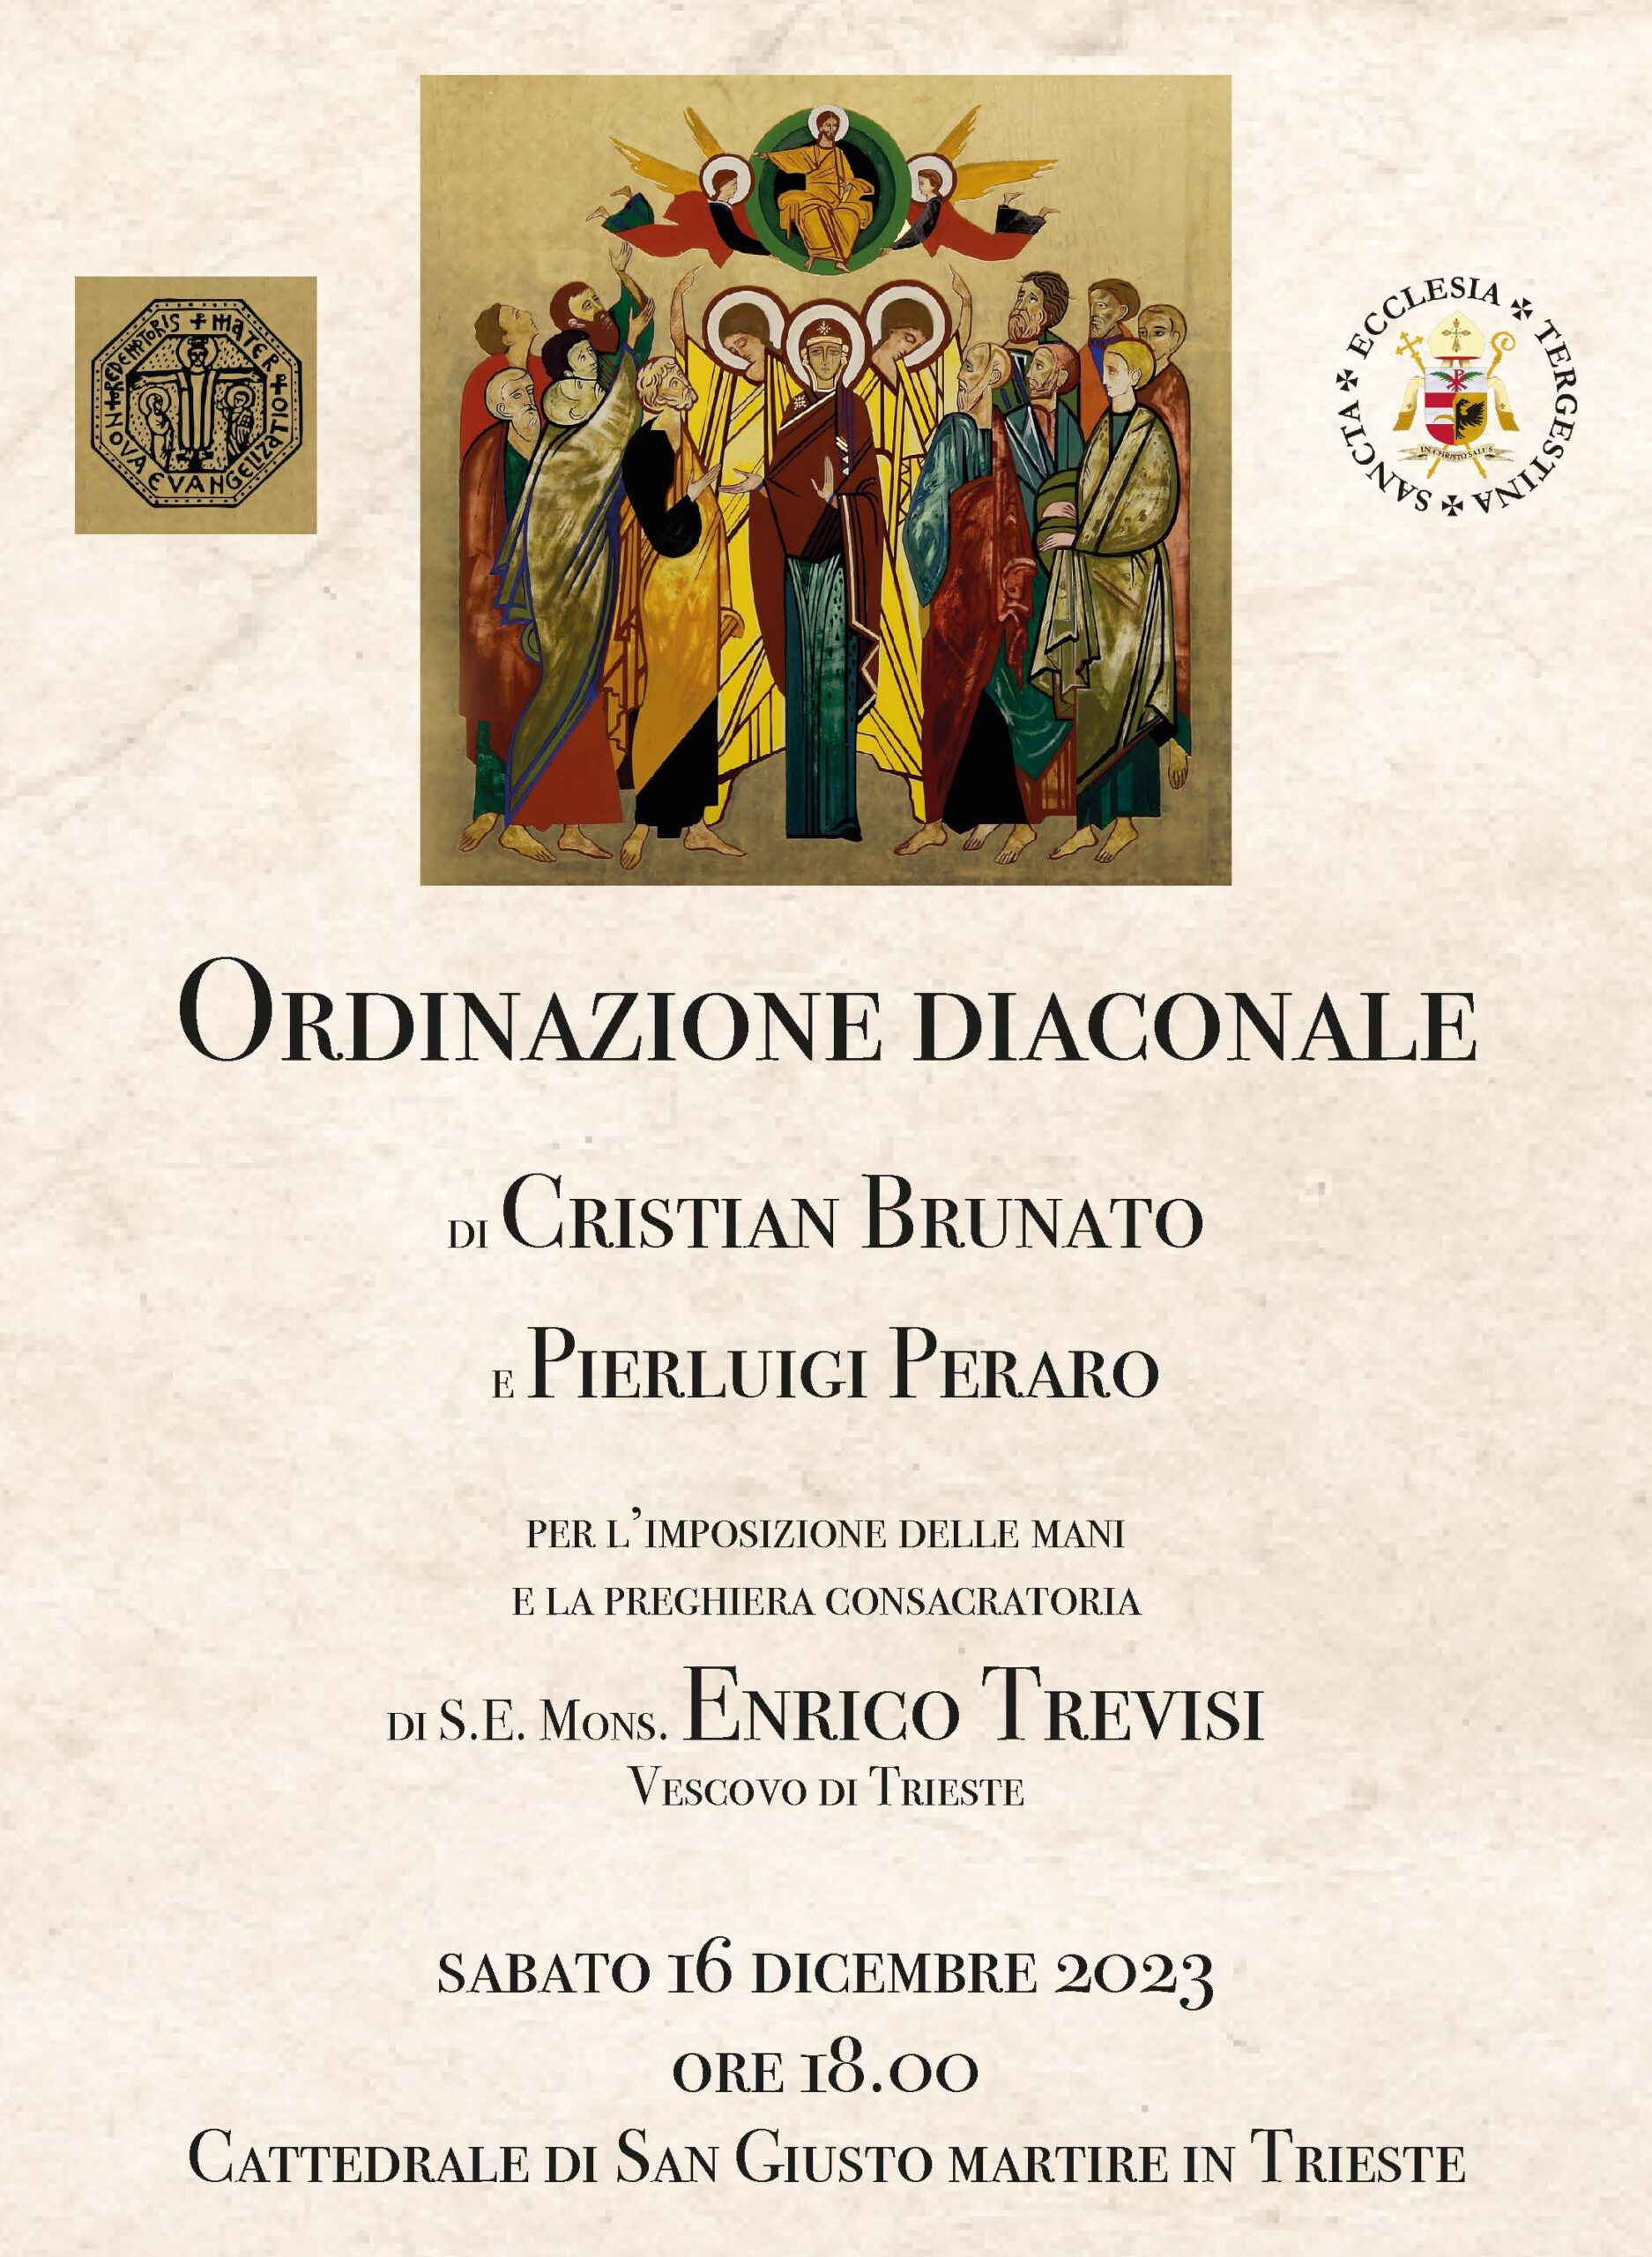 Sabato 16 dicembre Cristian Brunato e Pierluigi Peraro saranno ordinati Diaconi